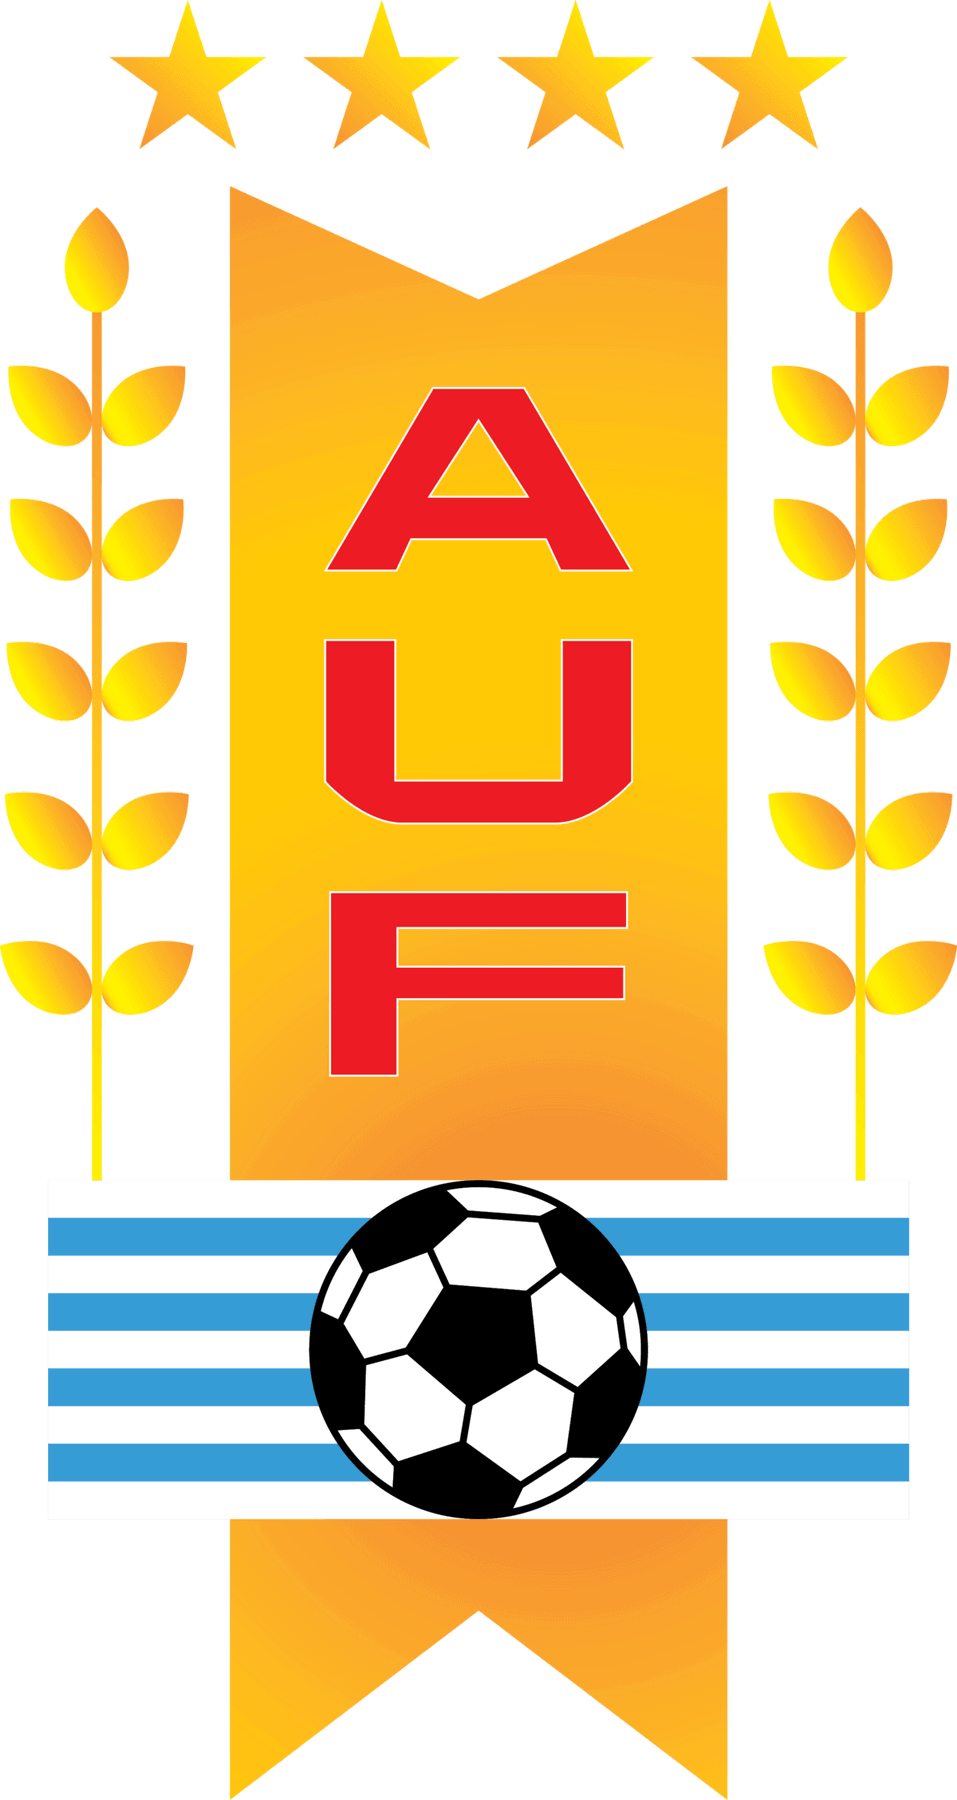 uruguay football association logo logoeps.net 